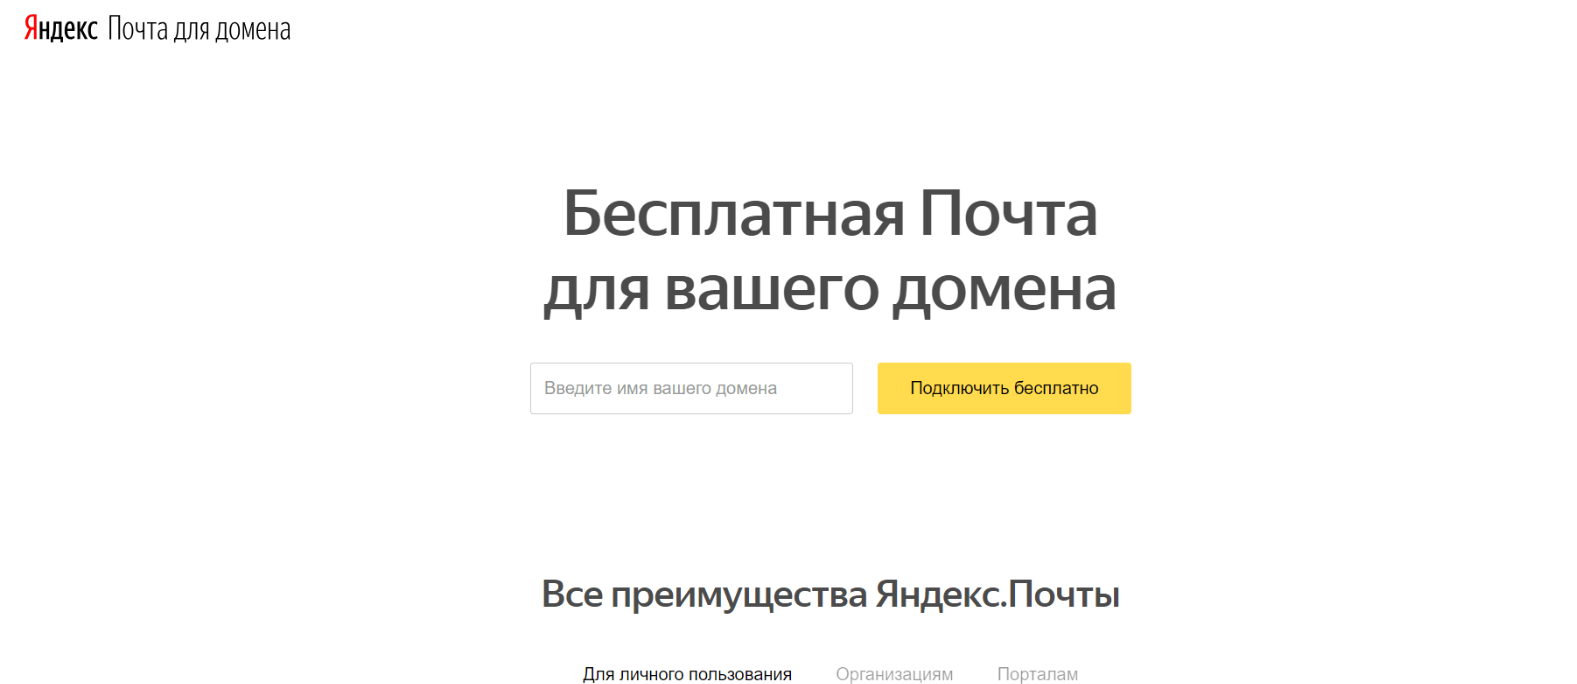 Яндекс.Почта для домена